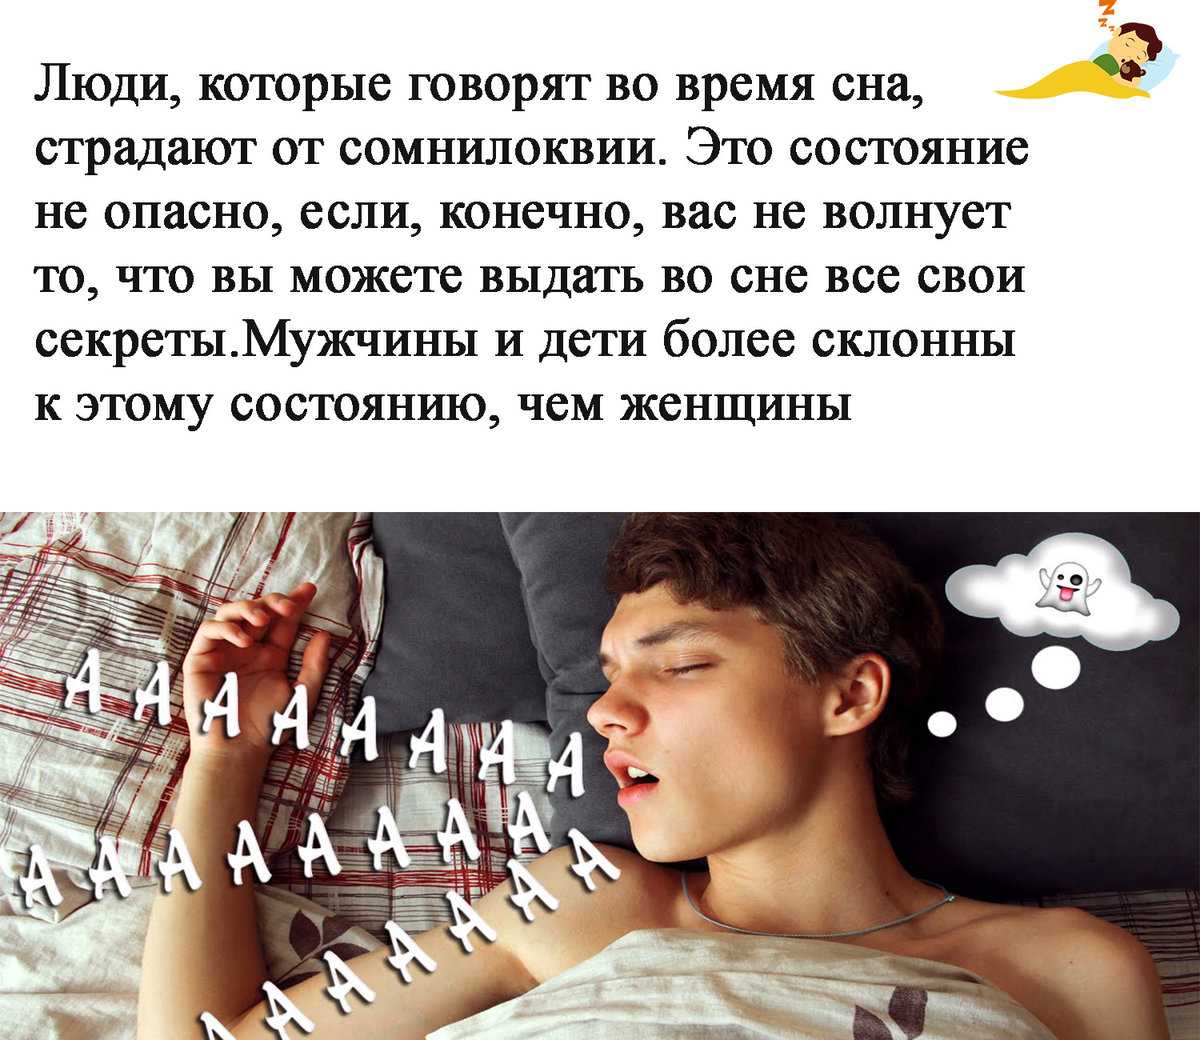 Почему человек разговаривает во сне что можно узнать у спящего